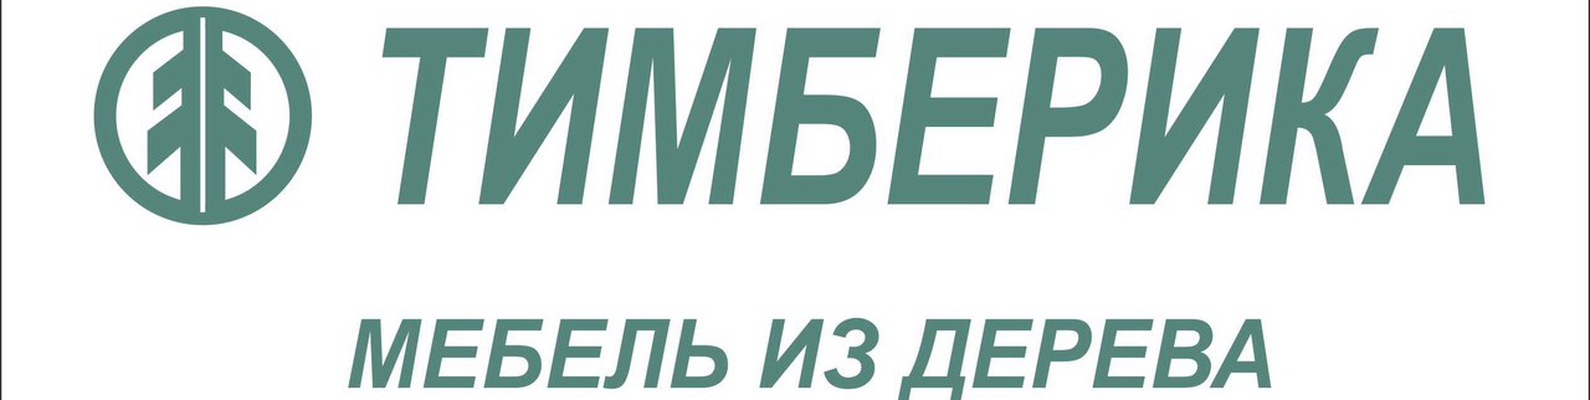 Каталог TIMBERICA в Москве